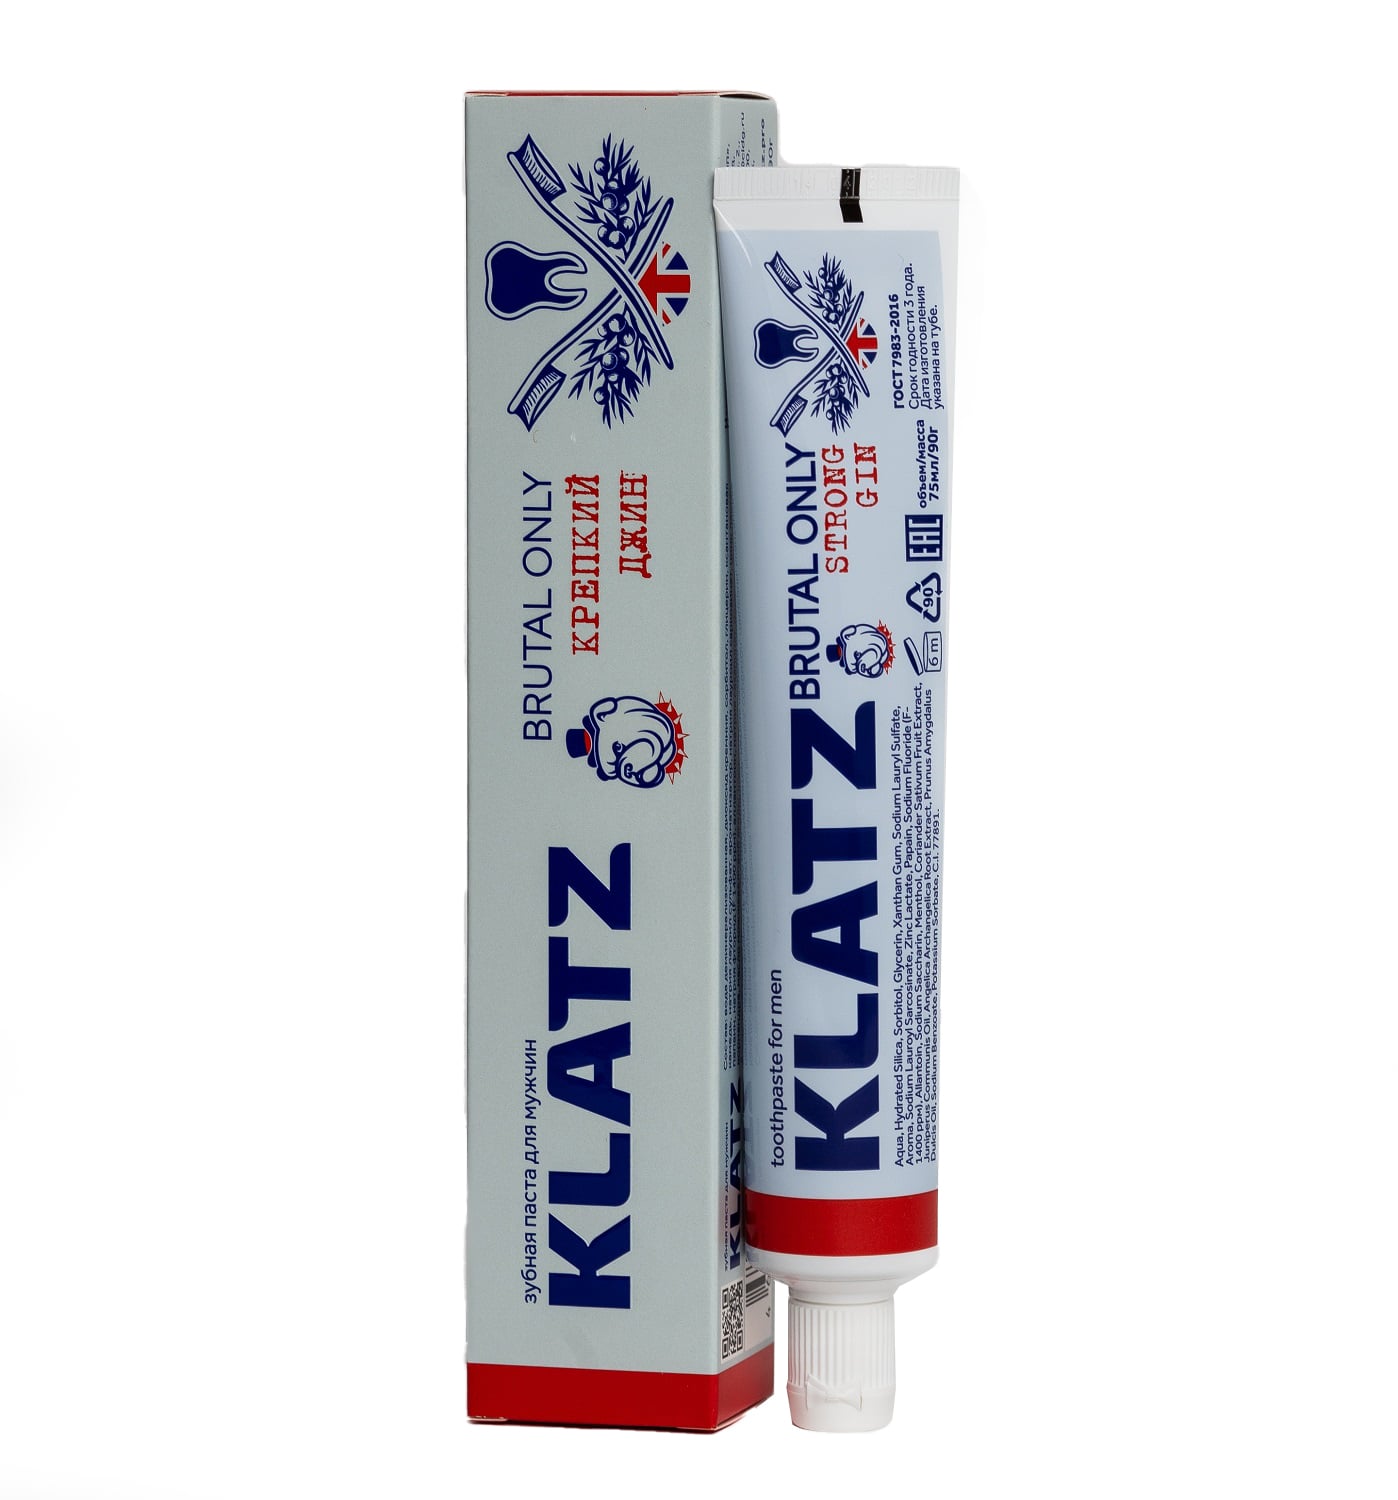 Klatz Зубная паста для мужчин Крепкий джин, 75 мл (Klatz, Brutal only) klatz зубная паста для мужчин жгучий абсент 75 мл klatz brutal only